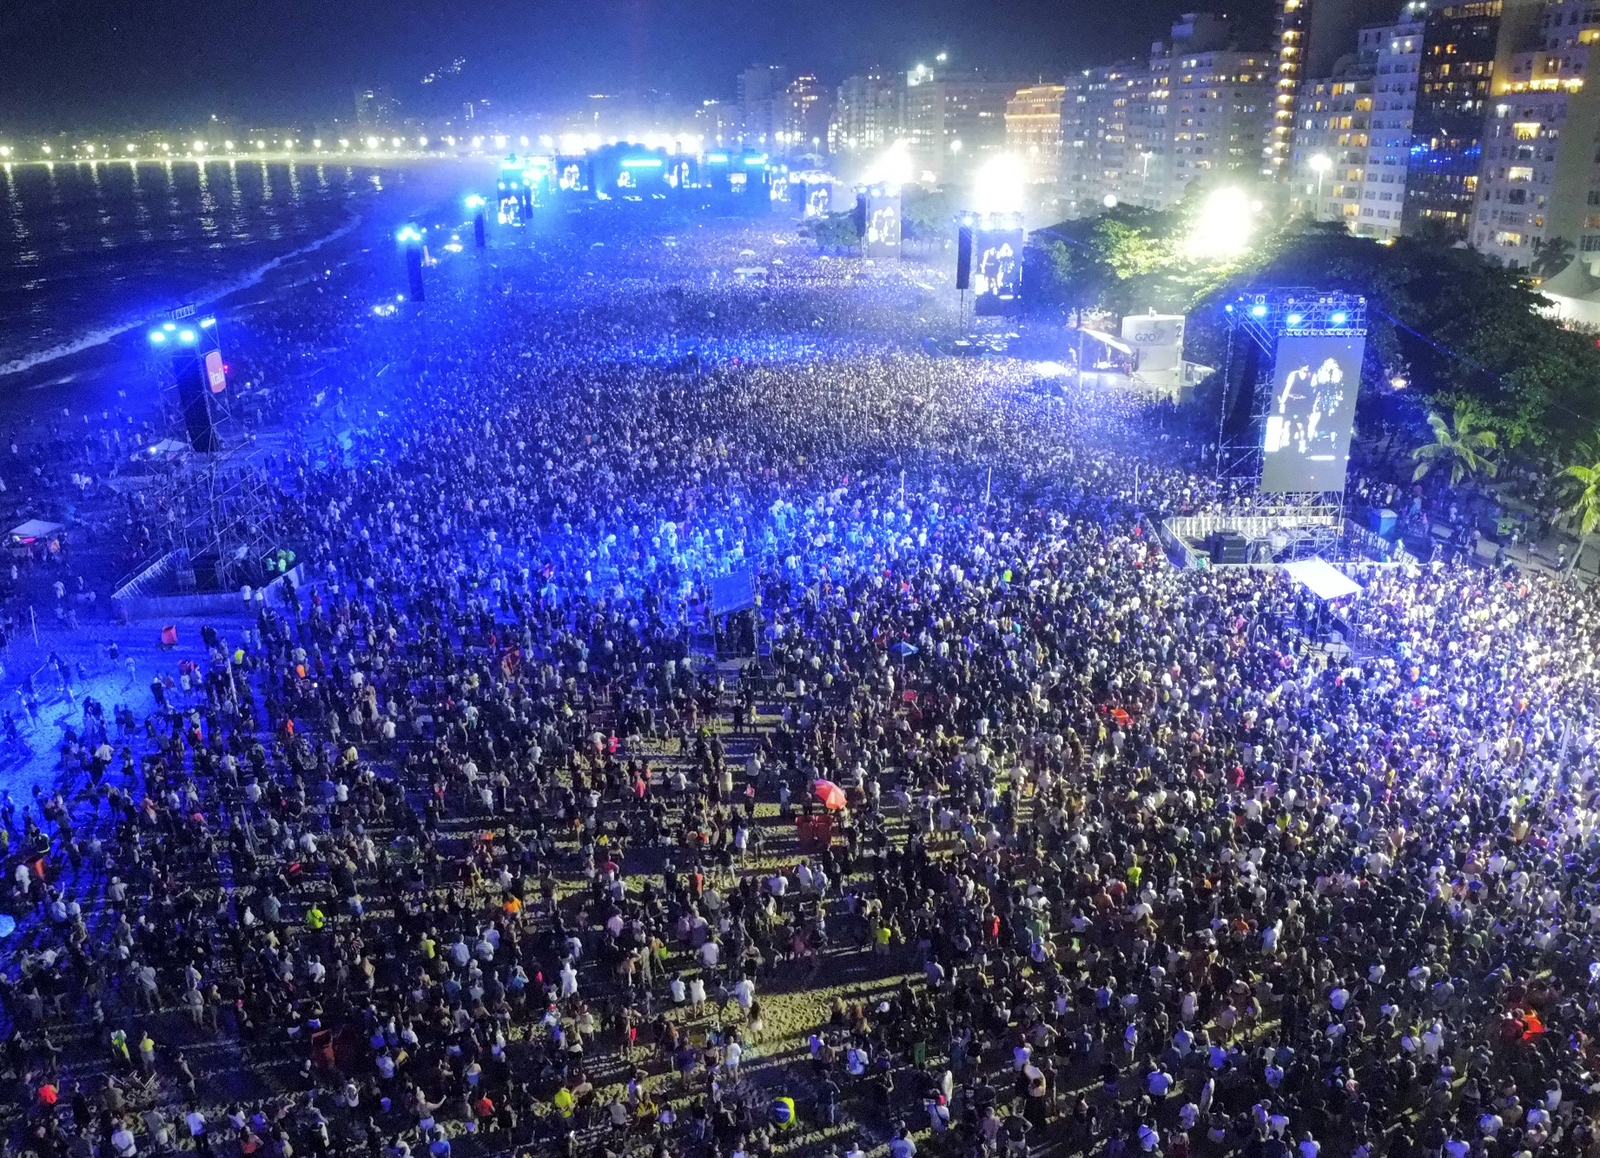 Show de Madonna leva público ao delírio na praia de Copacabana — Foto: Custódio Coimbra / Agência O GLOBO